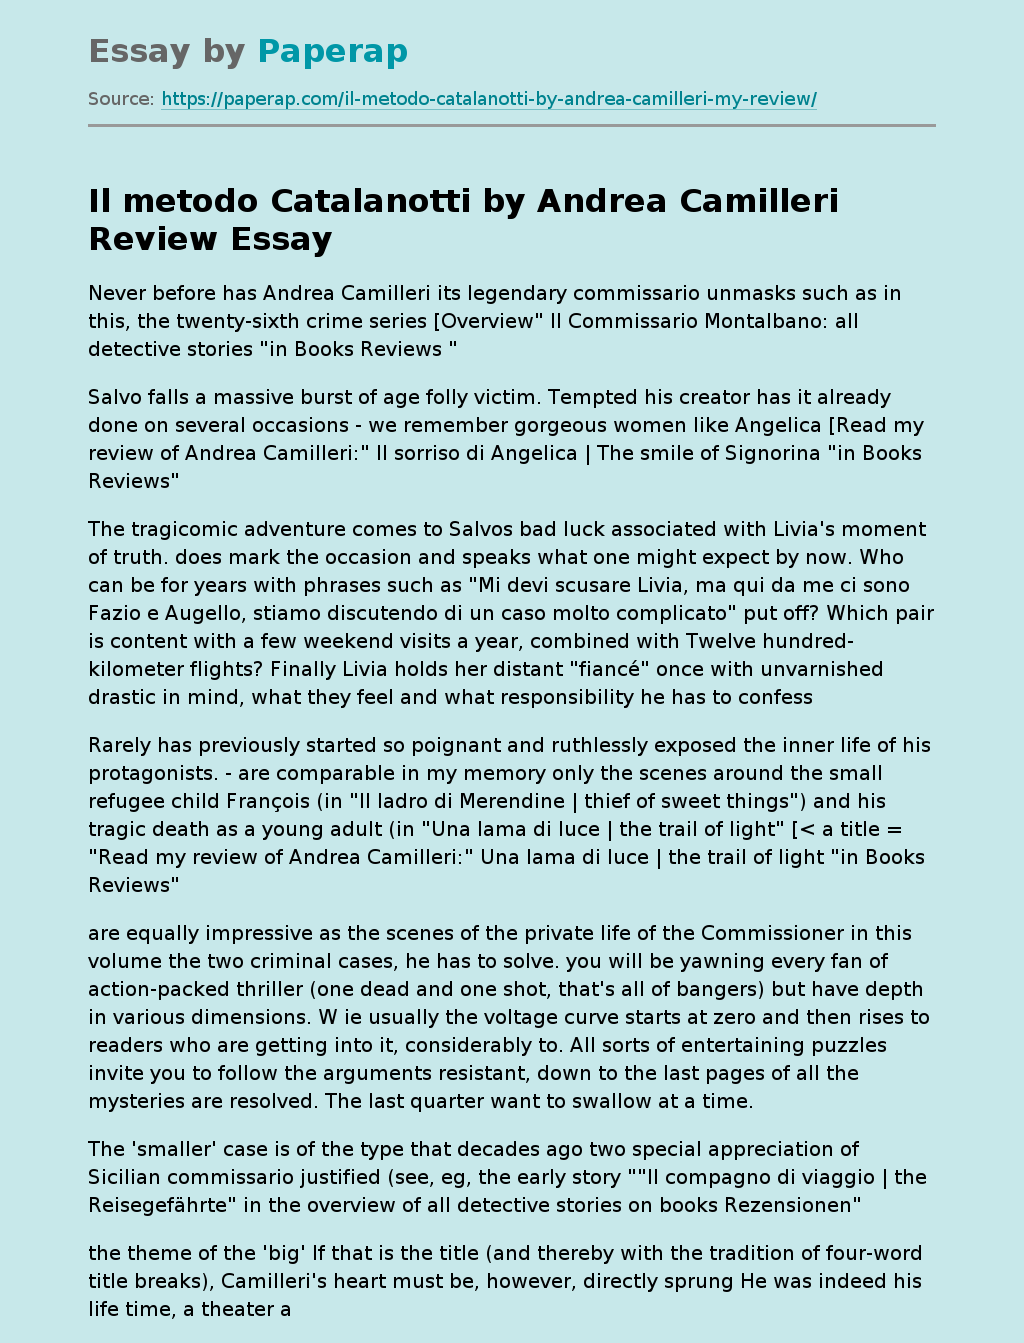 Il metodo Catalanotti by Andrea Camilleri Review